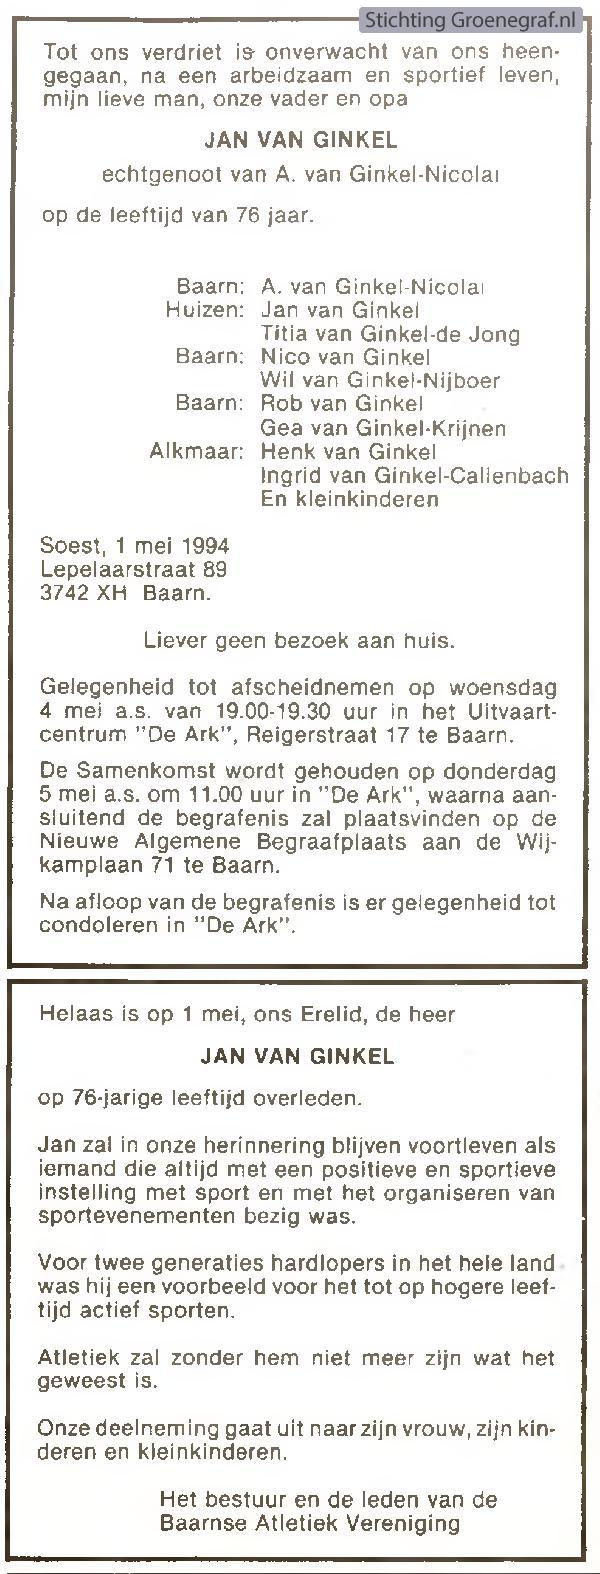 Overlijdensscan Jan van Ginkel